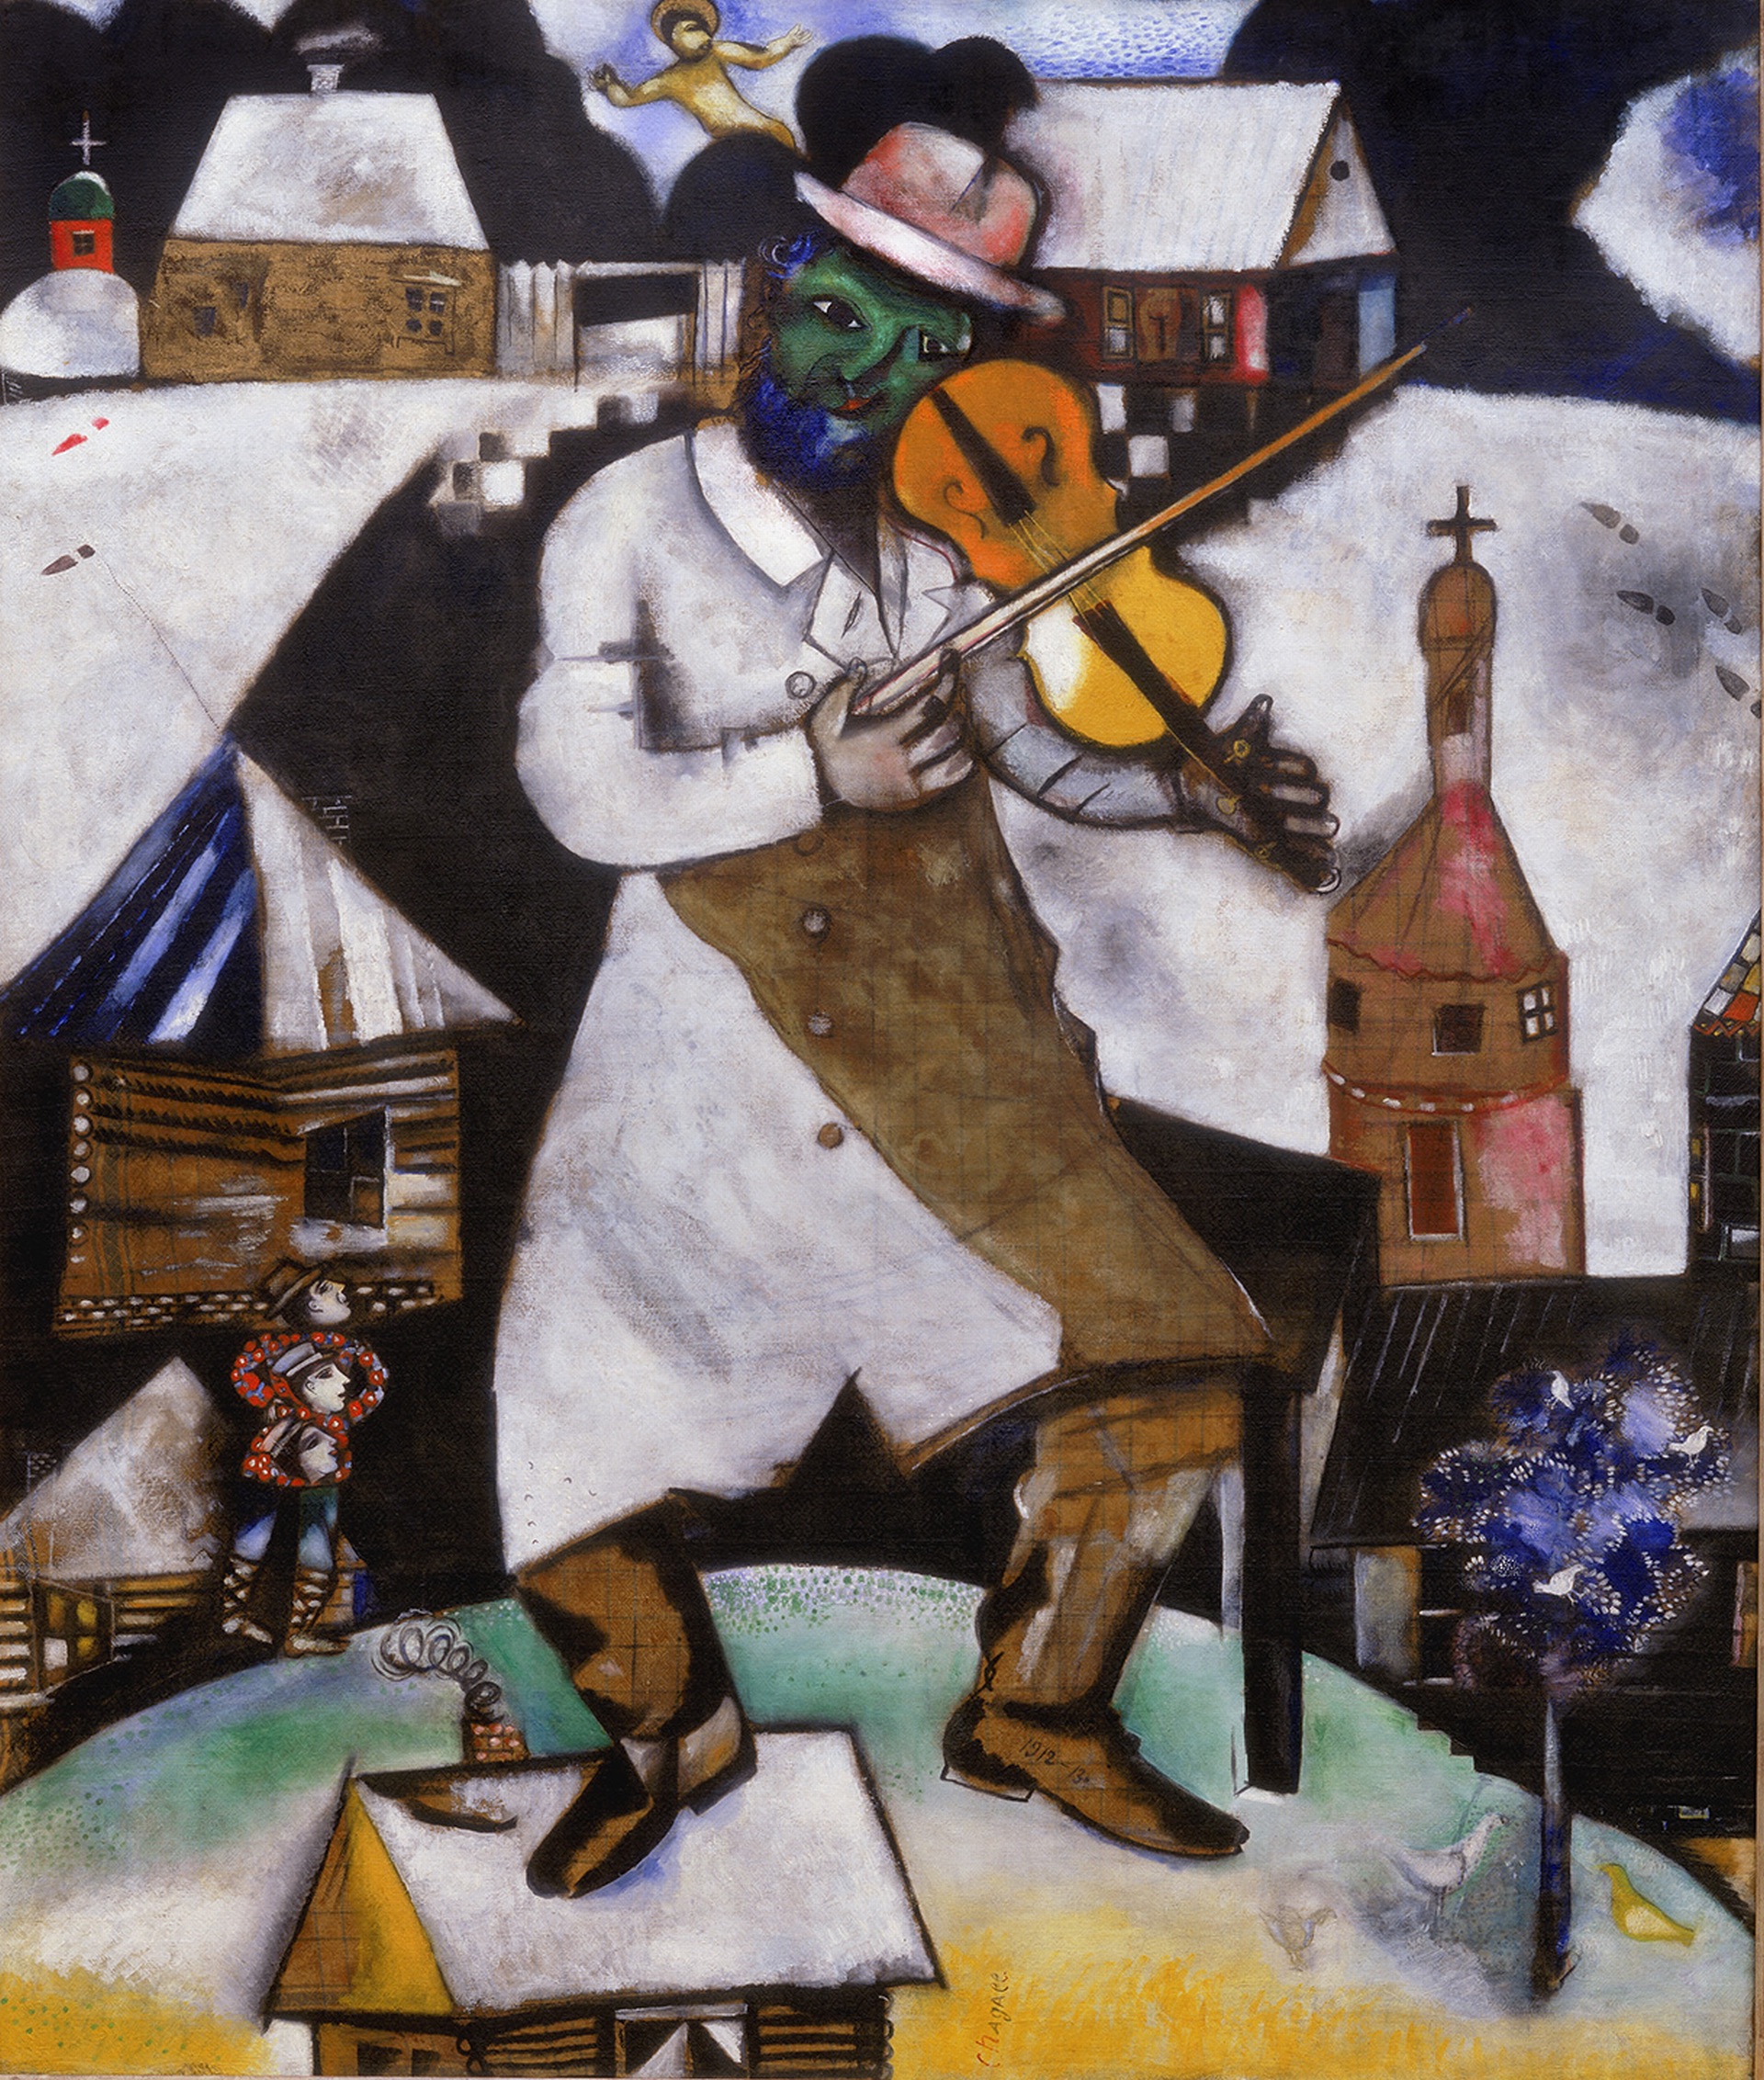 Der Geiger by Marc Chagall - 1912-1913 - 196.5 x 166.5 cm Stedelijk Museum